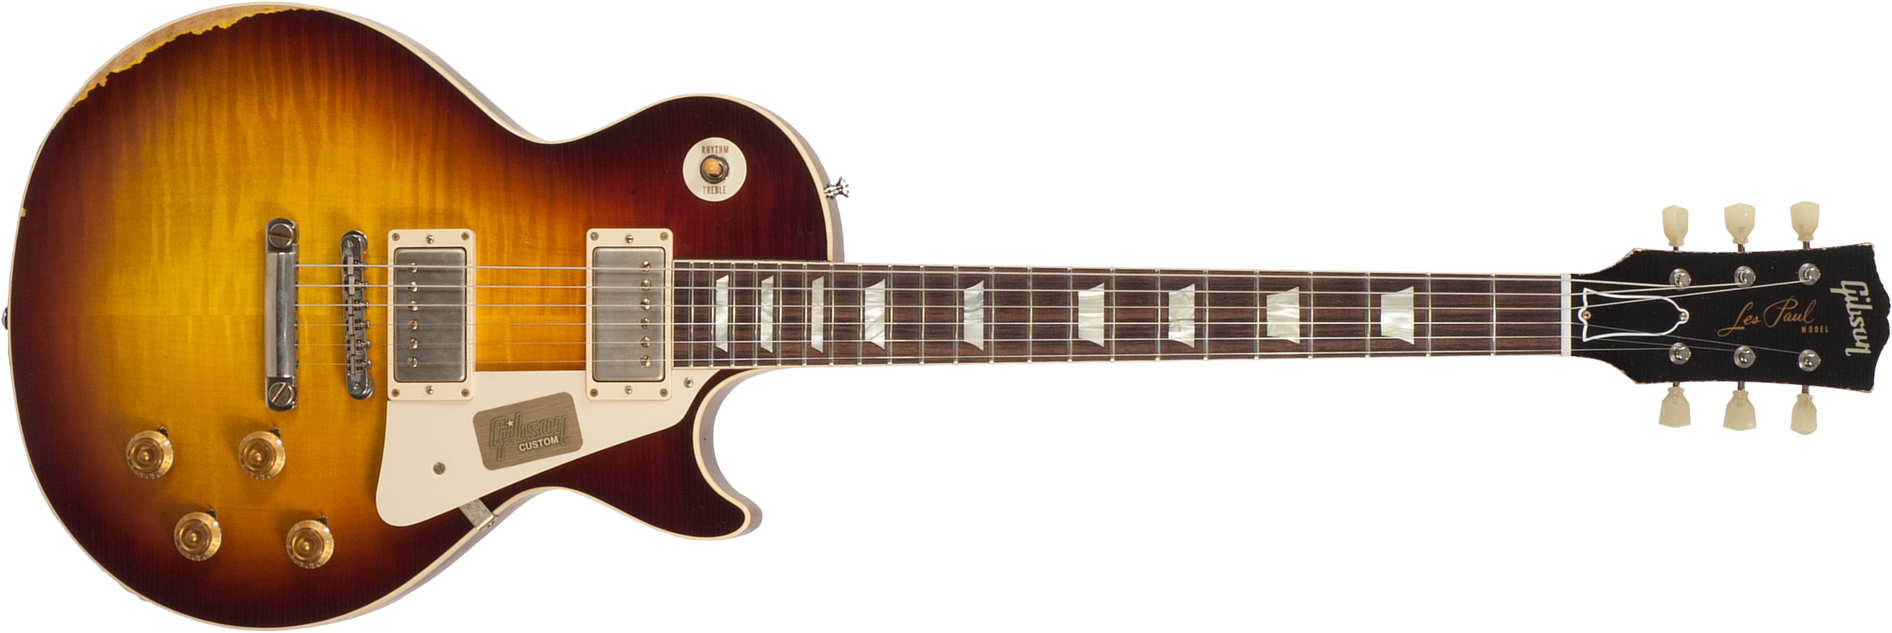 Gibson Custom Shop M2m Les Paul Standard 1958 2h Ht Rw #r862322 - Aged Bourbon Burst - Guitarra eléctrica de corte único. - Main picture